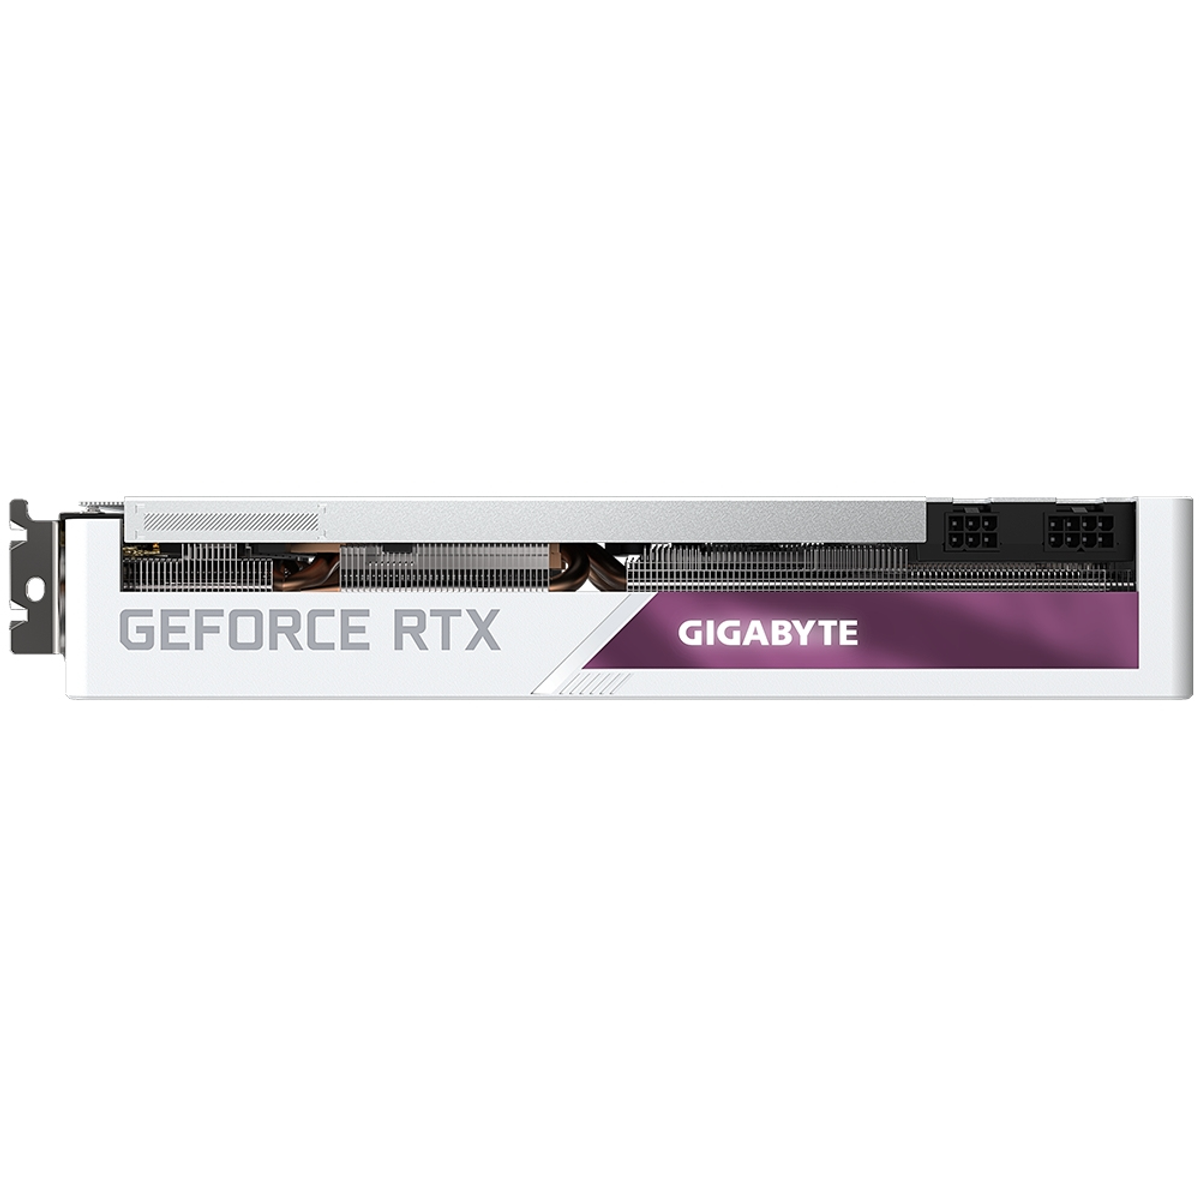 OC RTX GIGABYTE Vision 3070 Grafikkarte) (NVIDIA, GeForce